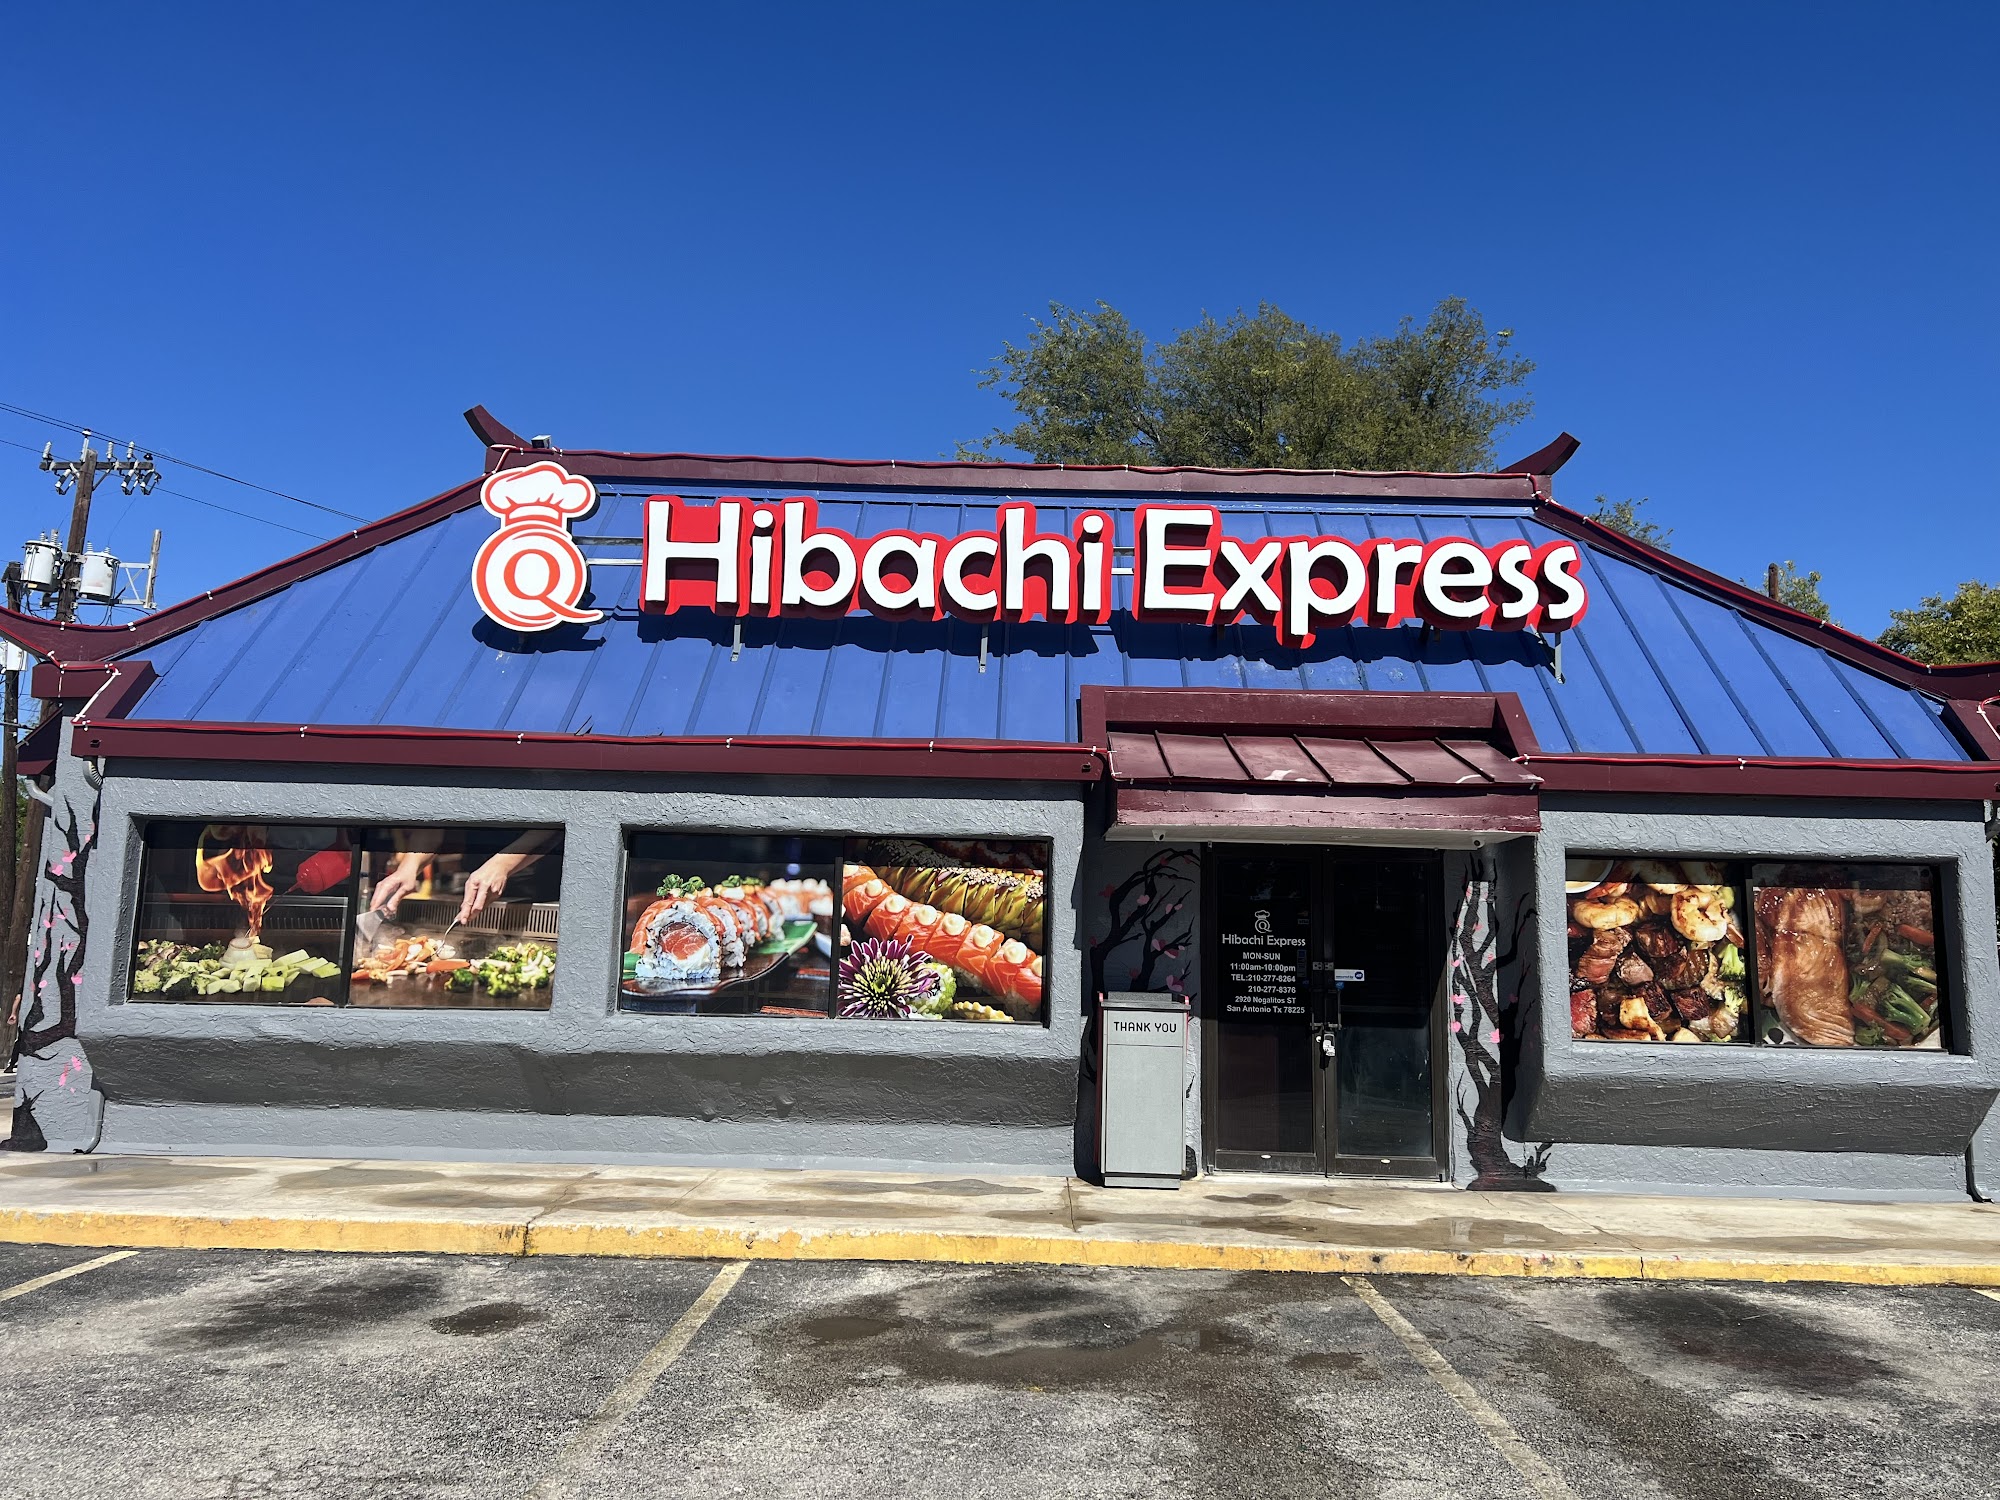 Q Hibachi Express